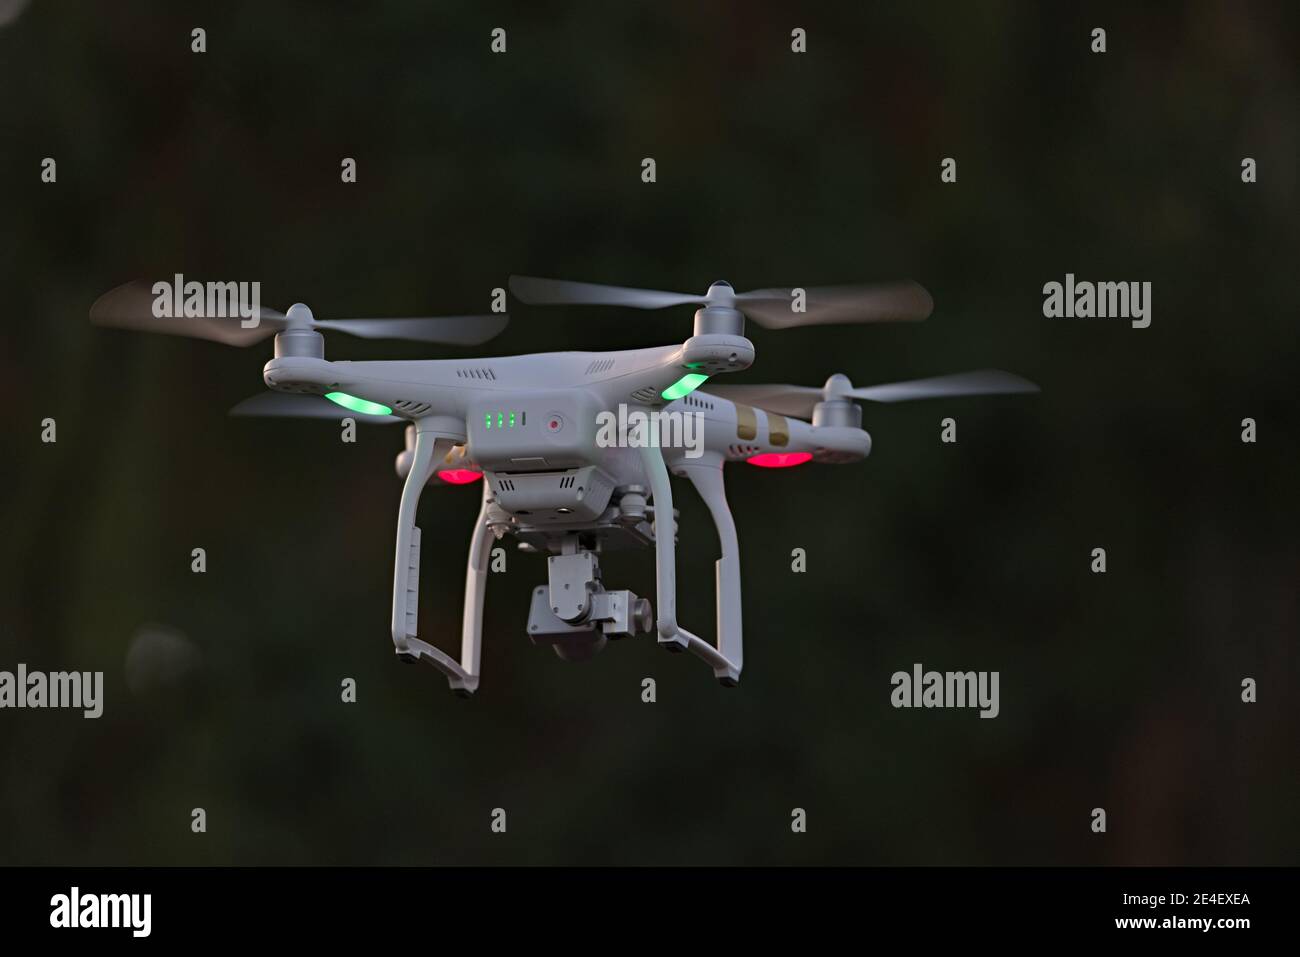 25 - Vista posteriore del drone della telecamera quadcopter professionale. Guardando da dietro, vengono visualizzate le spie dell'indicatore di stato della batteria e l'orientamento verde. Foto Stock